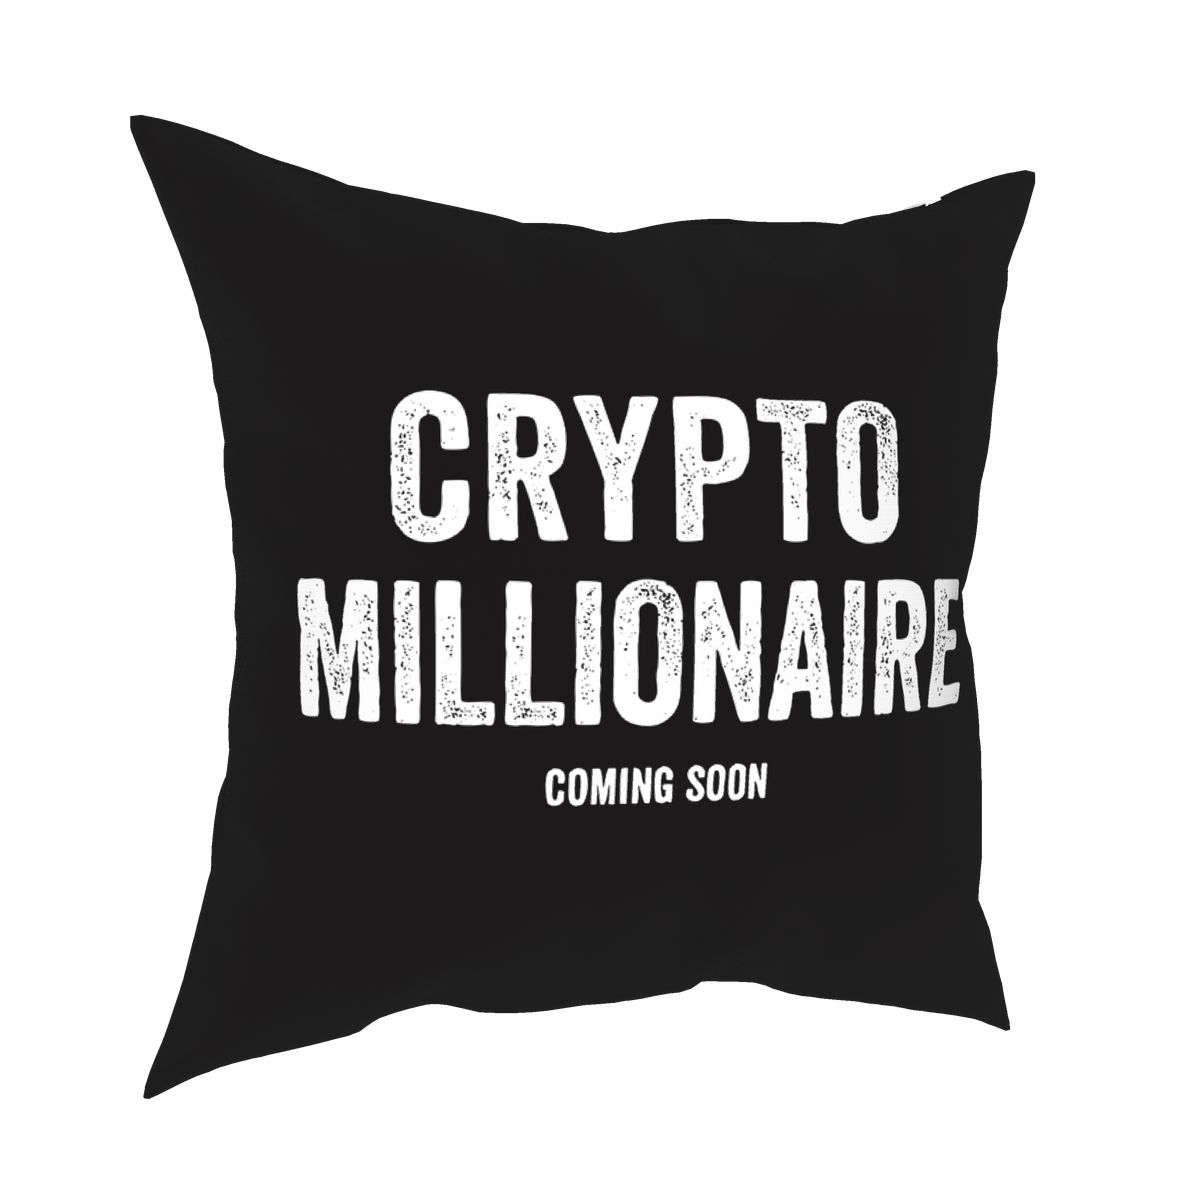 Crypto Millionaire pillowcase